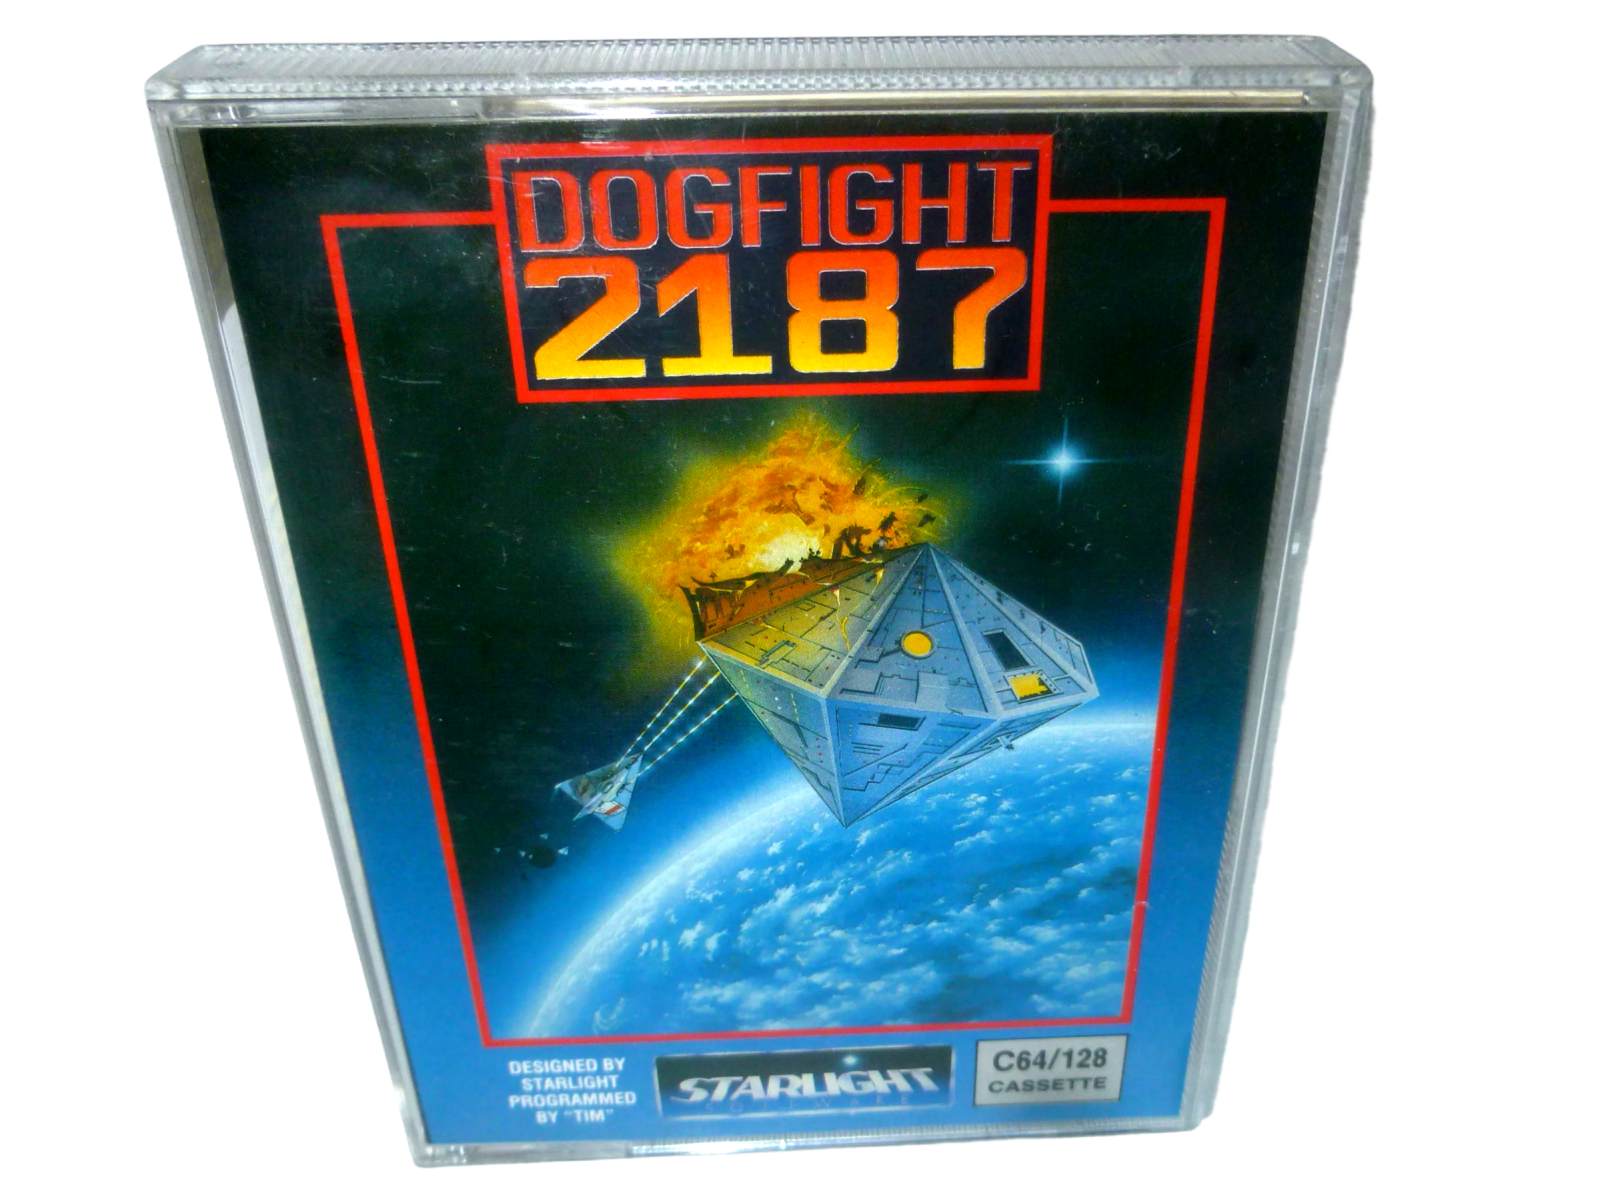 Dogfight 2187 - Kassette / Datasette Starlight / Ariolasoft 1987 5